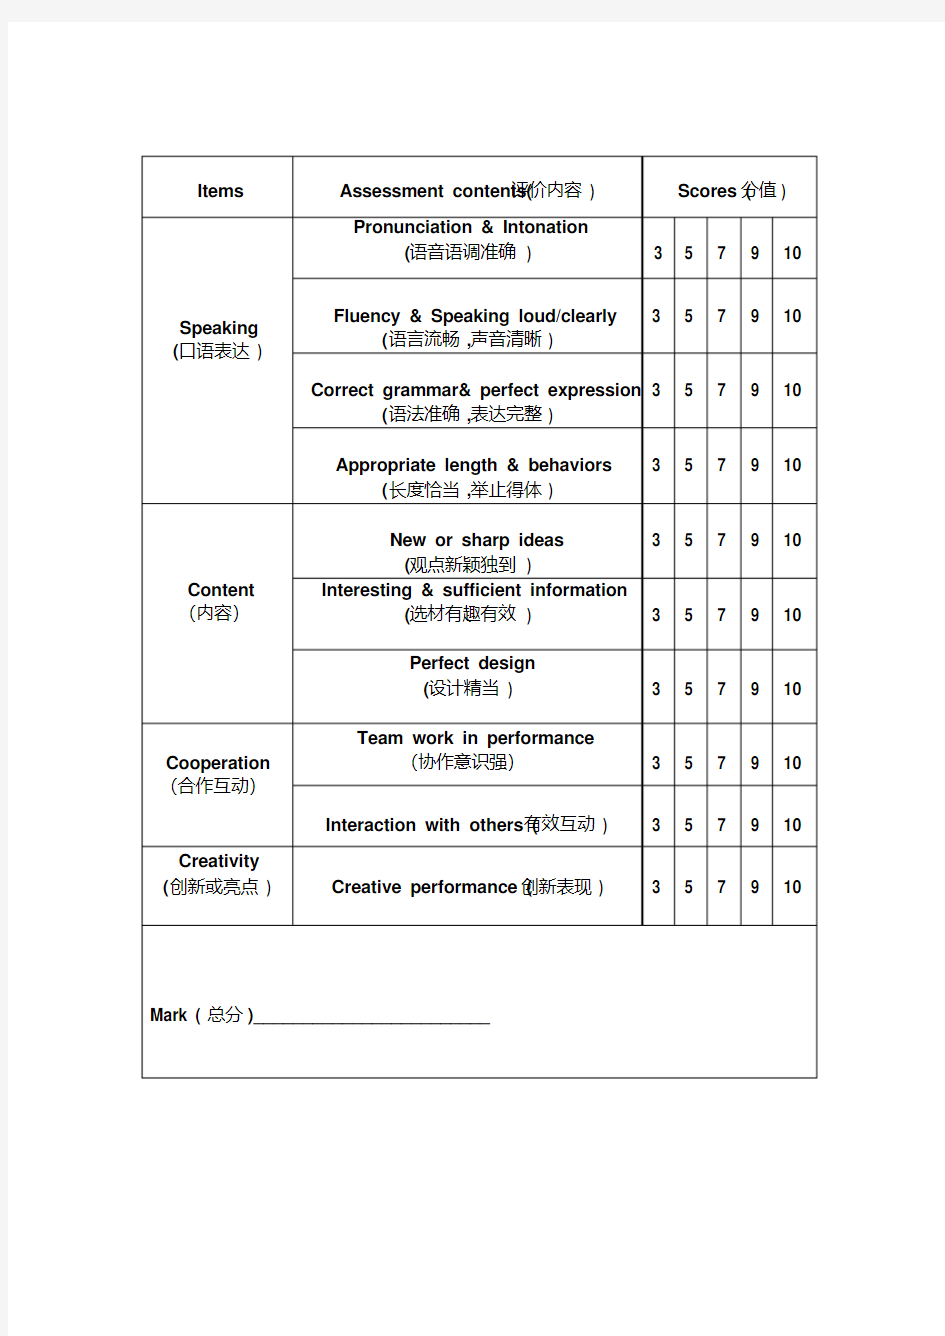 英语口语评价表.pdf